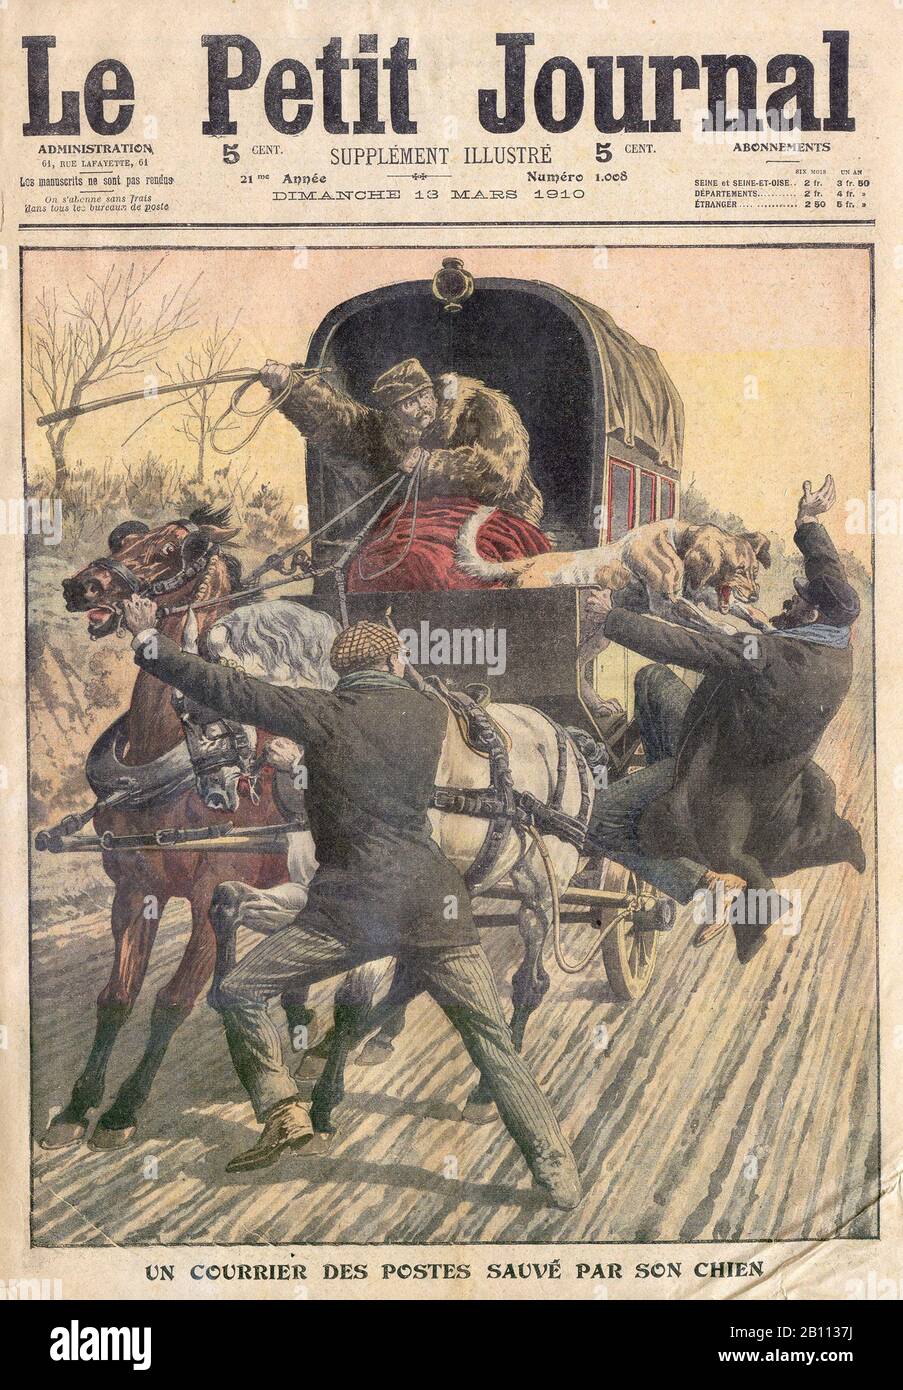 Un COURRIER DES POSTES SAUVÉ PAR SON CHIEN - UNA POSTA SALVATA DAL SUO CANE - In 'le Petit Journal' French Illustrated Newspaper - 1910 Foto Stock